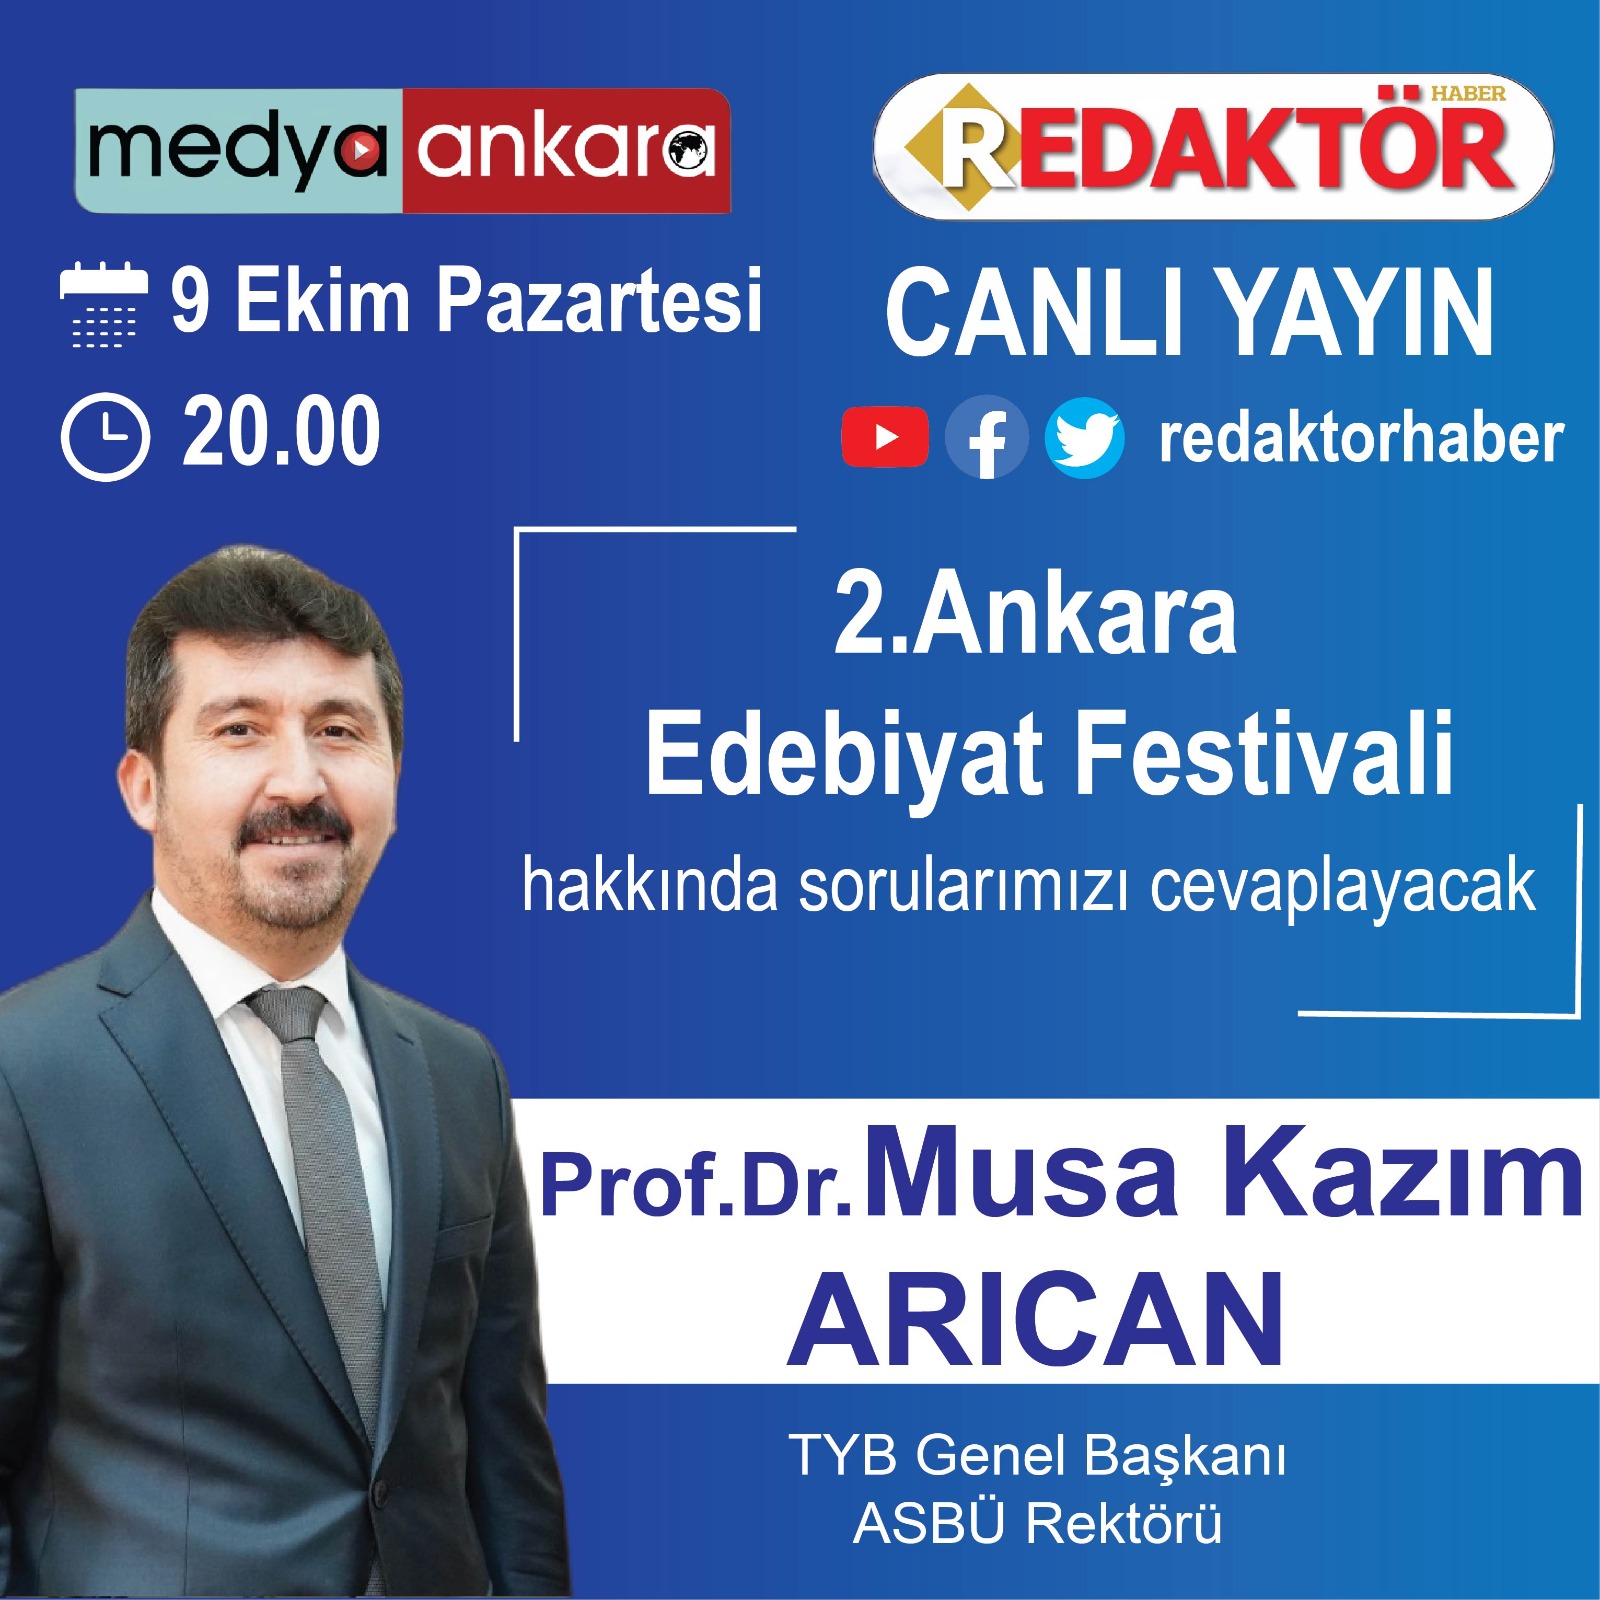 Genel Başkan Arıcan Medya Ankara  ve Redaktör haberin canlı yayın konuğu olacak